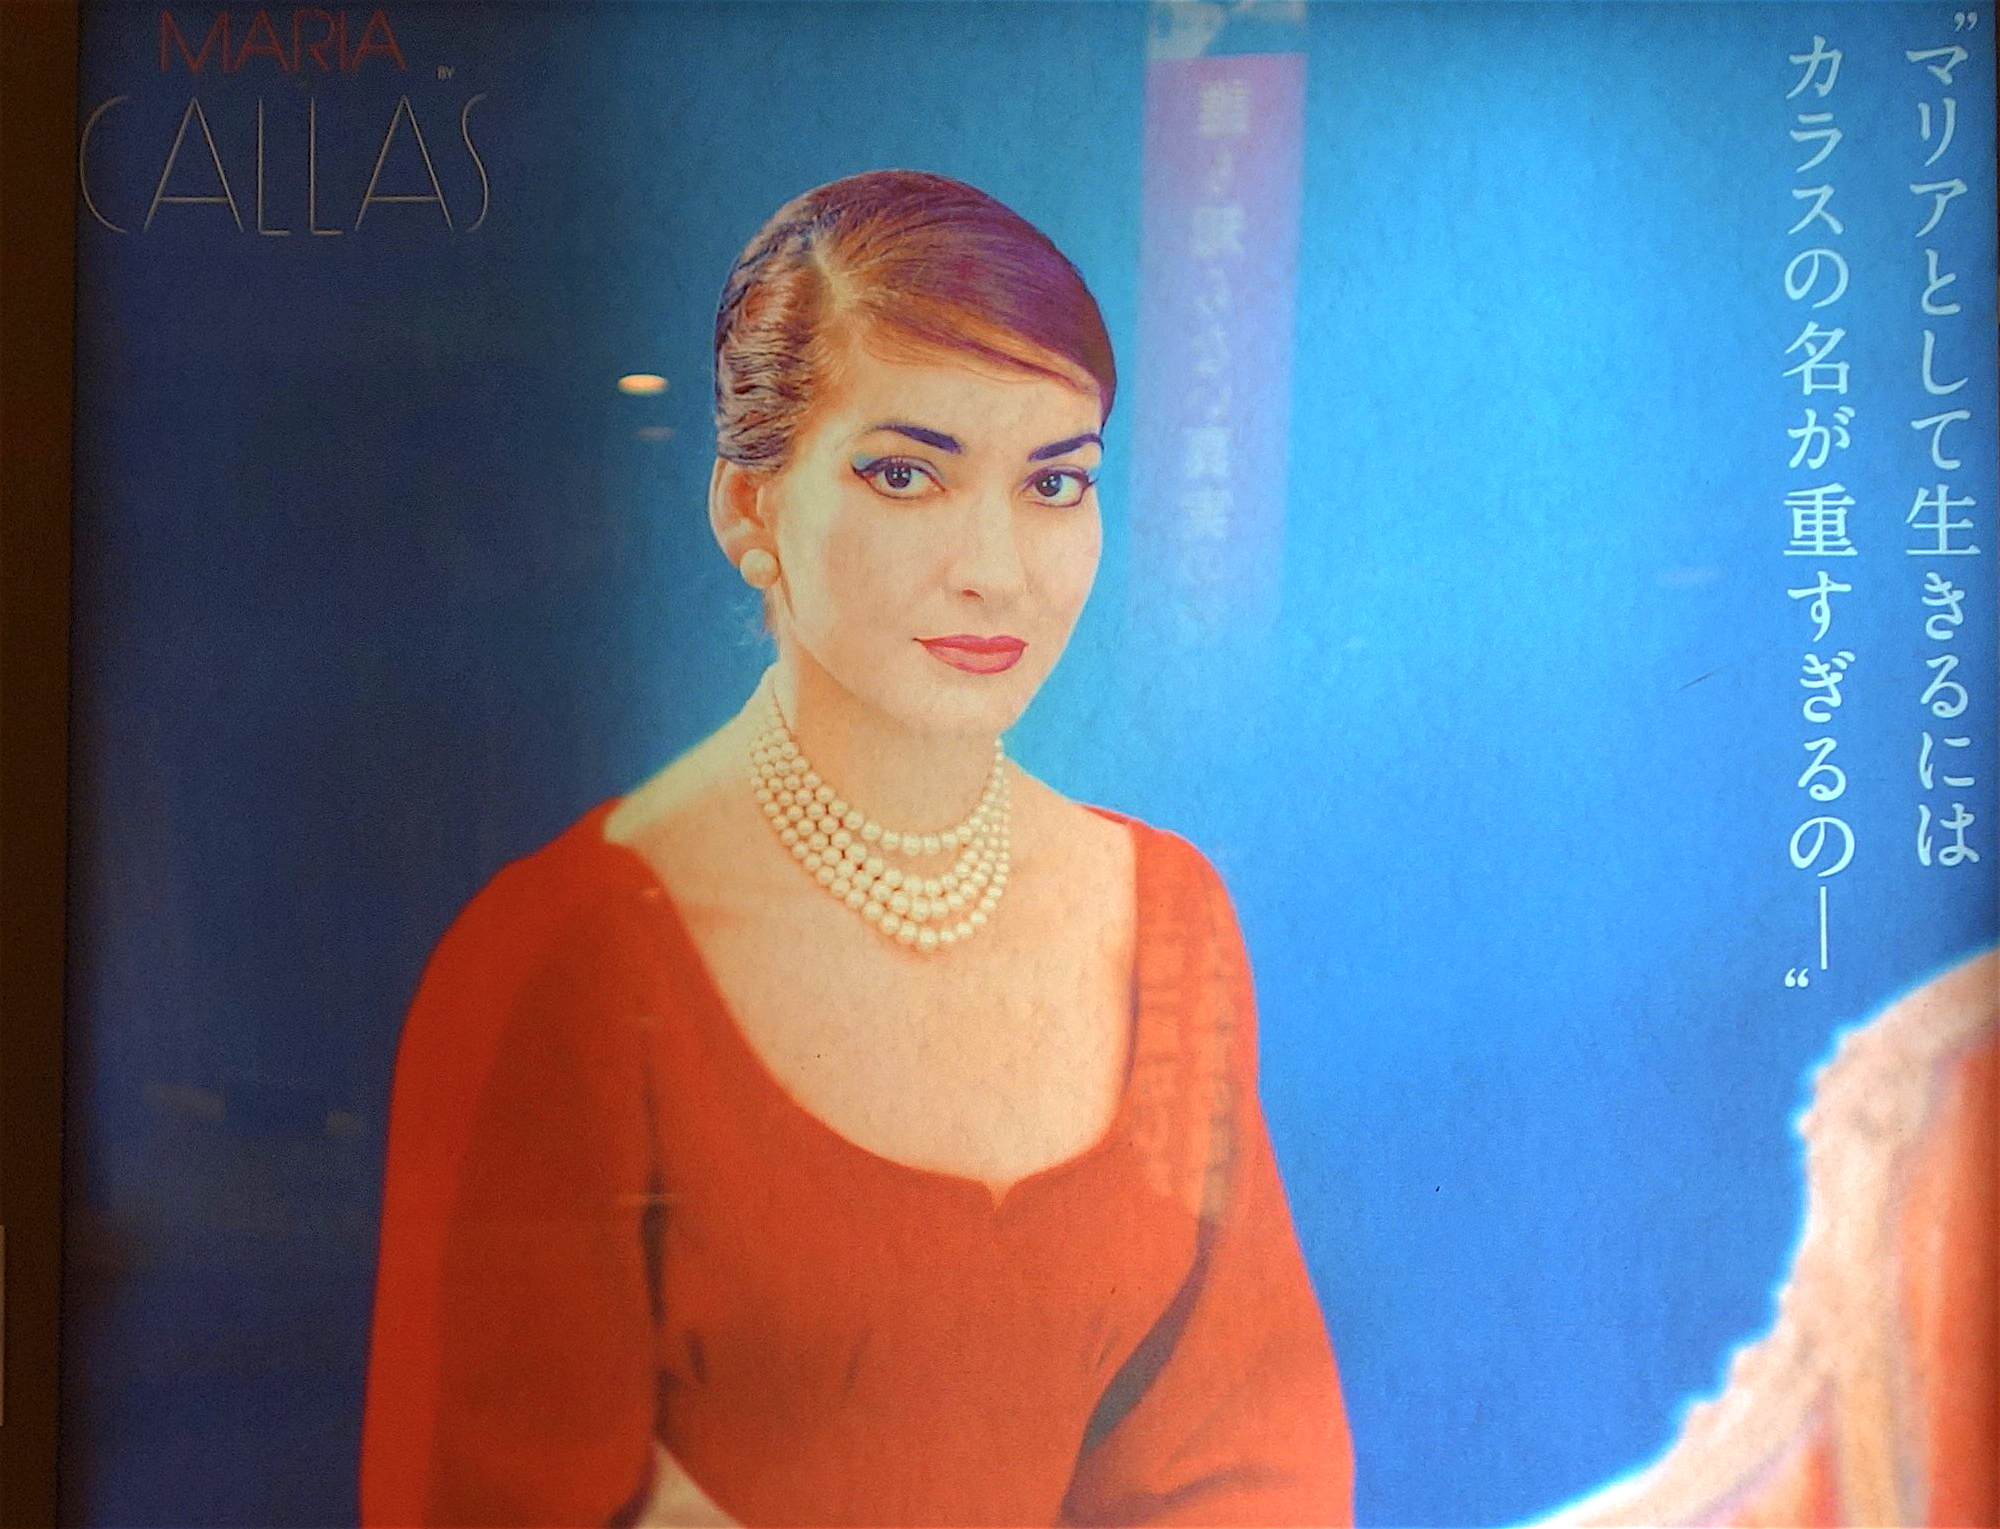 私は マリア カラス 映画を強くおススメ Maria By Callas Documentary Strongly Recommending Articles Art Culture